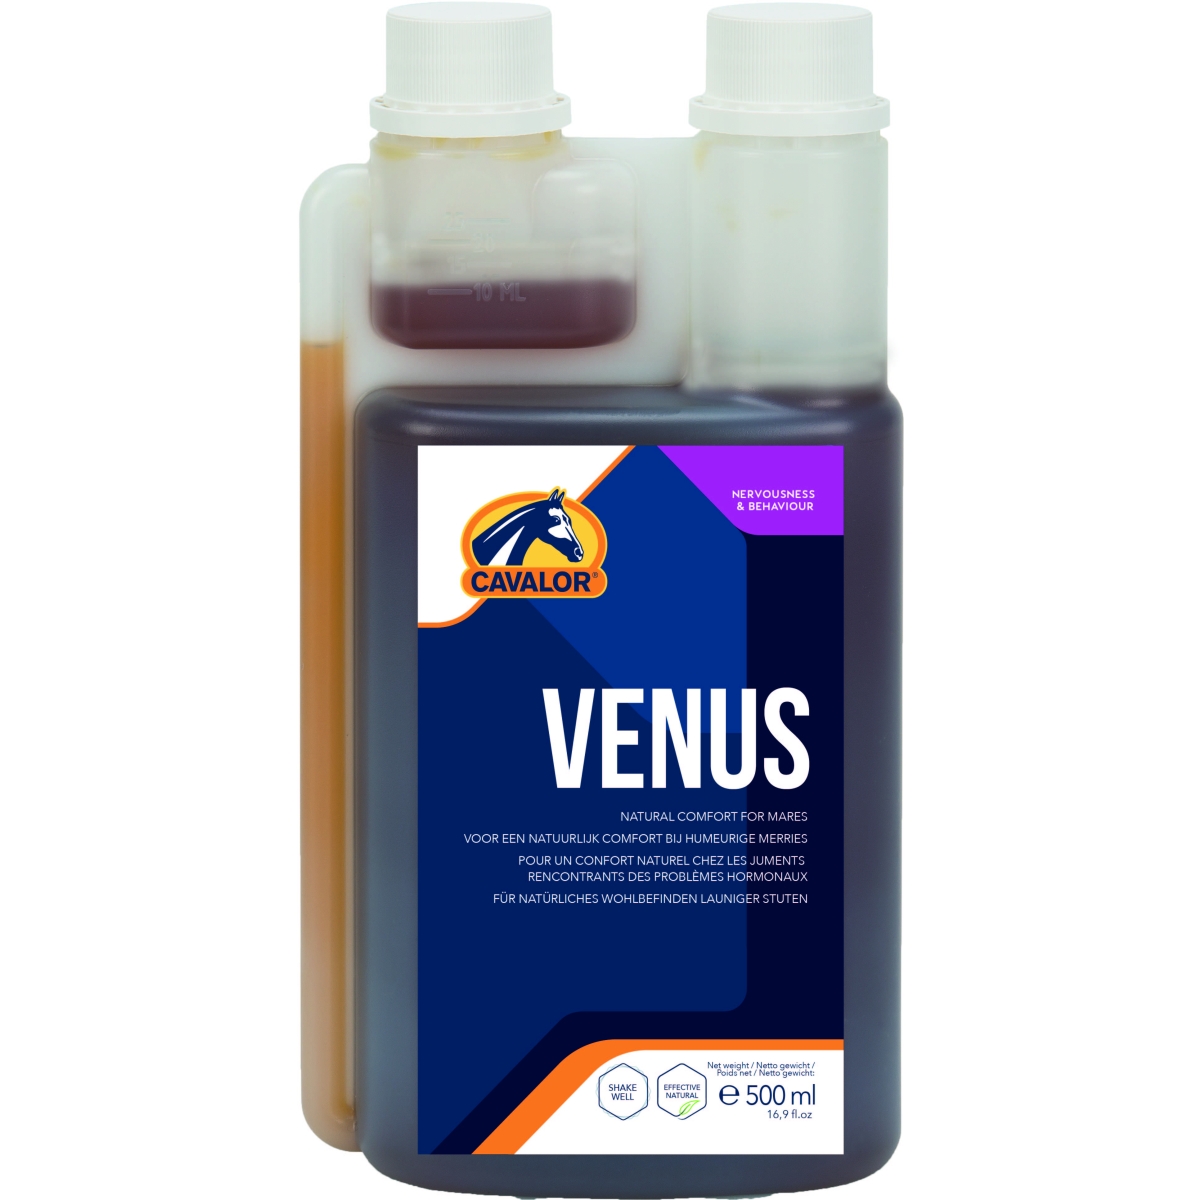 Cavalor Venus пищевая добавка для лошадей, 500 ml